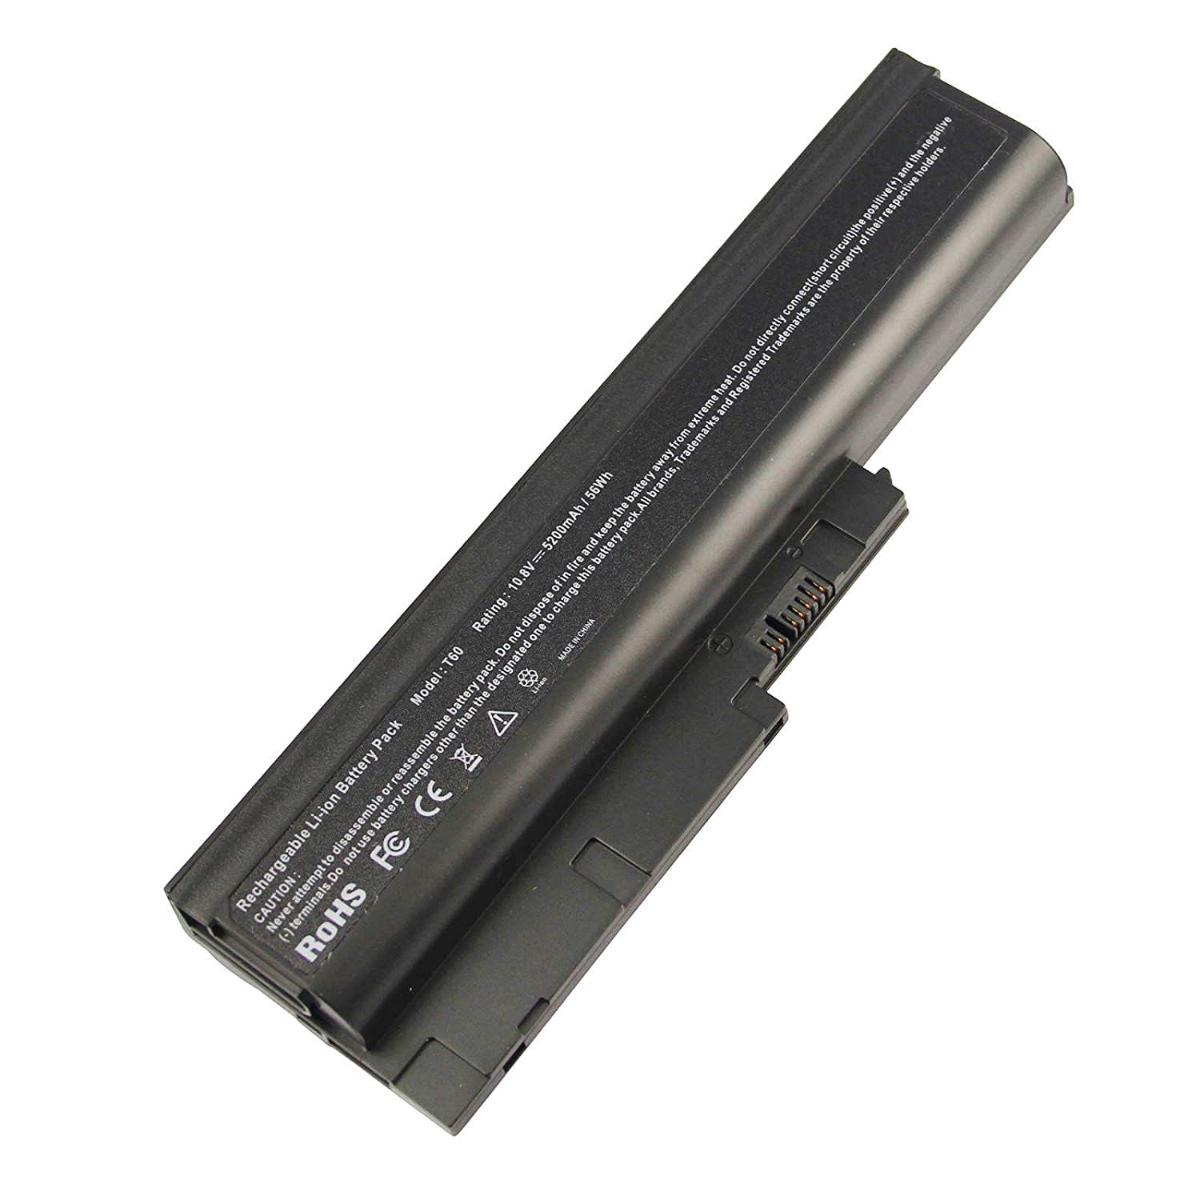 Μπαταρία Laptop - Battery for Lenovo ThinkPad R60e 9444 OEM υψηλής ποιότητας - high quality (Κωδ.1-BAT0106(4.4Ah))